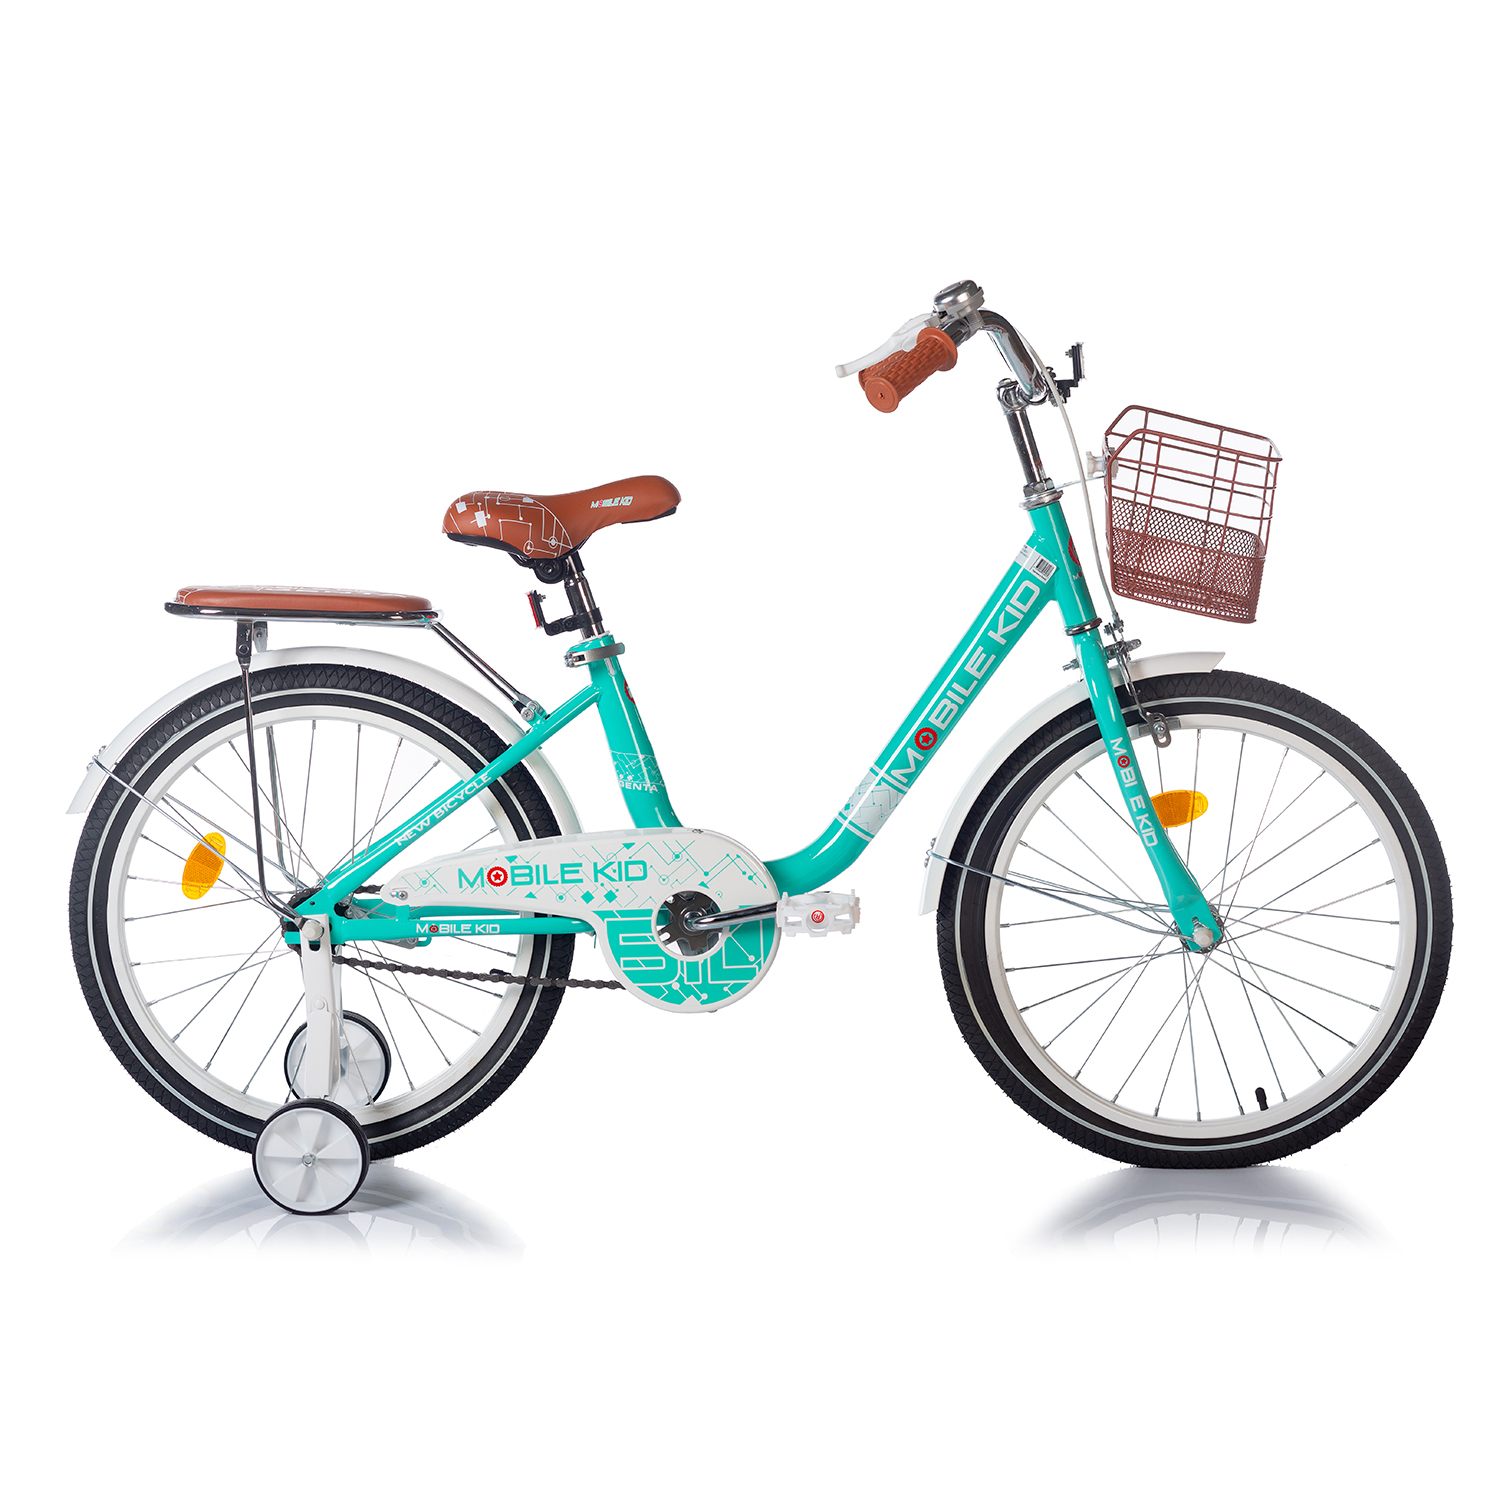 Купить велосипед Mobile Kid Genta 20 бирюзовый, цены на Мегамаркет | Артикул: 600006165754